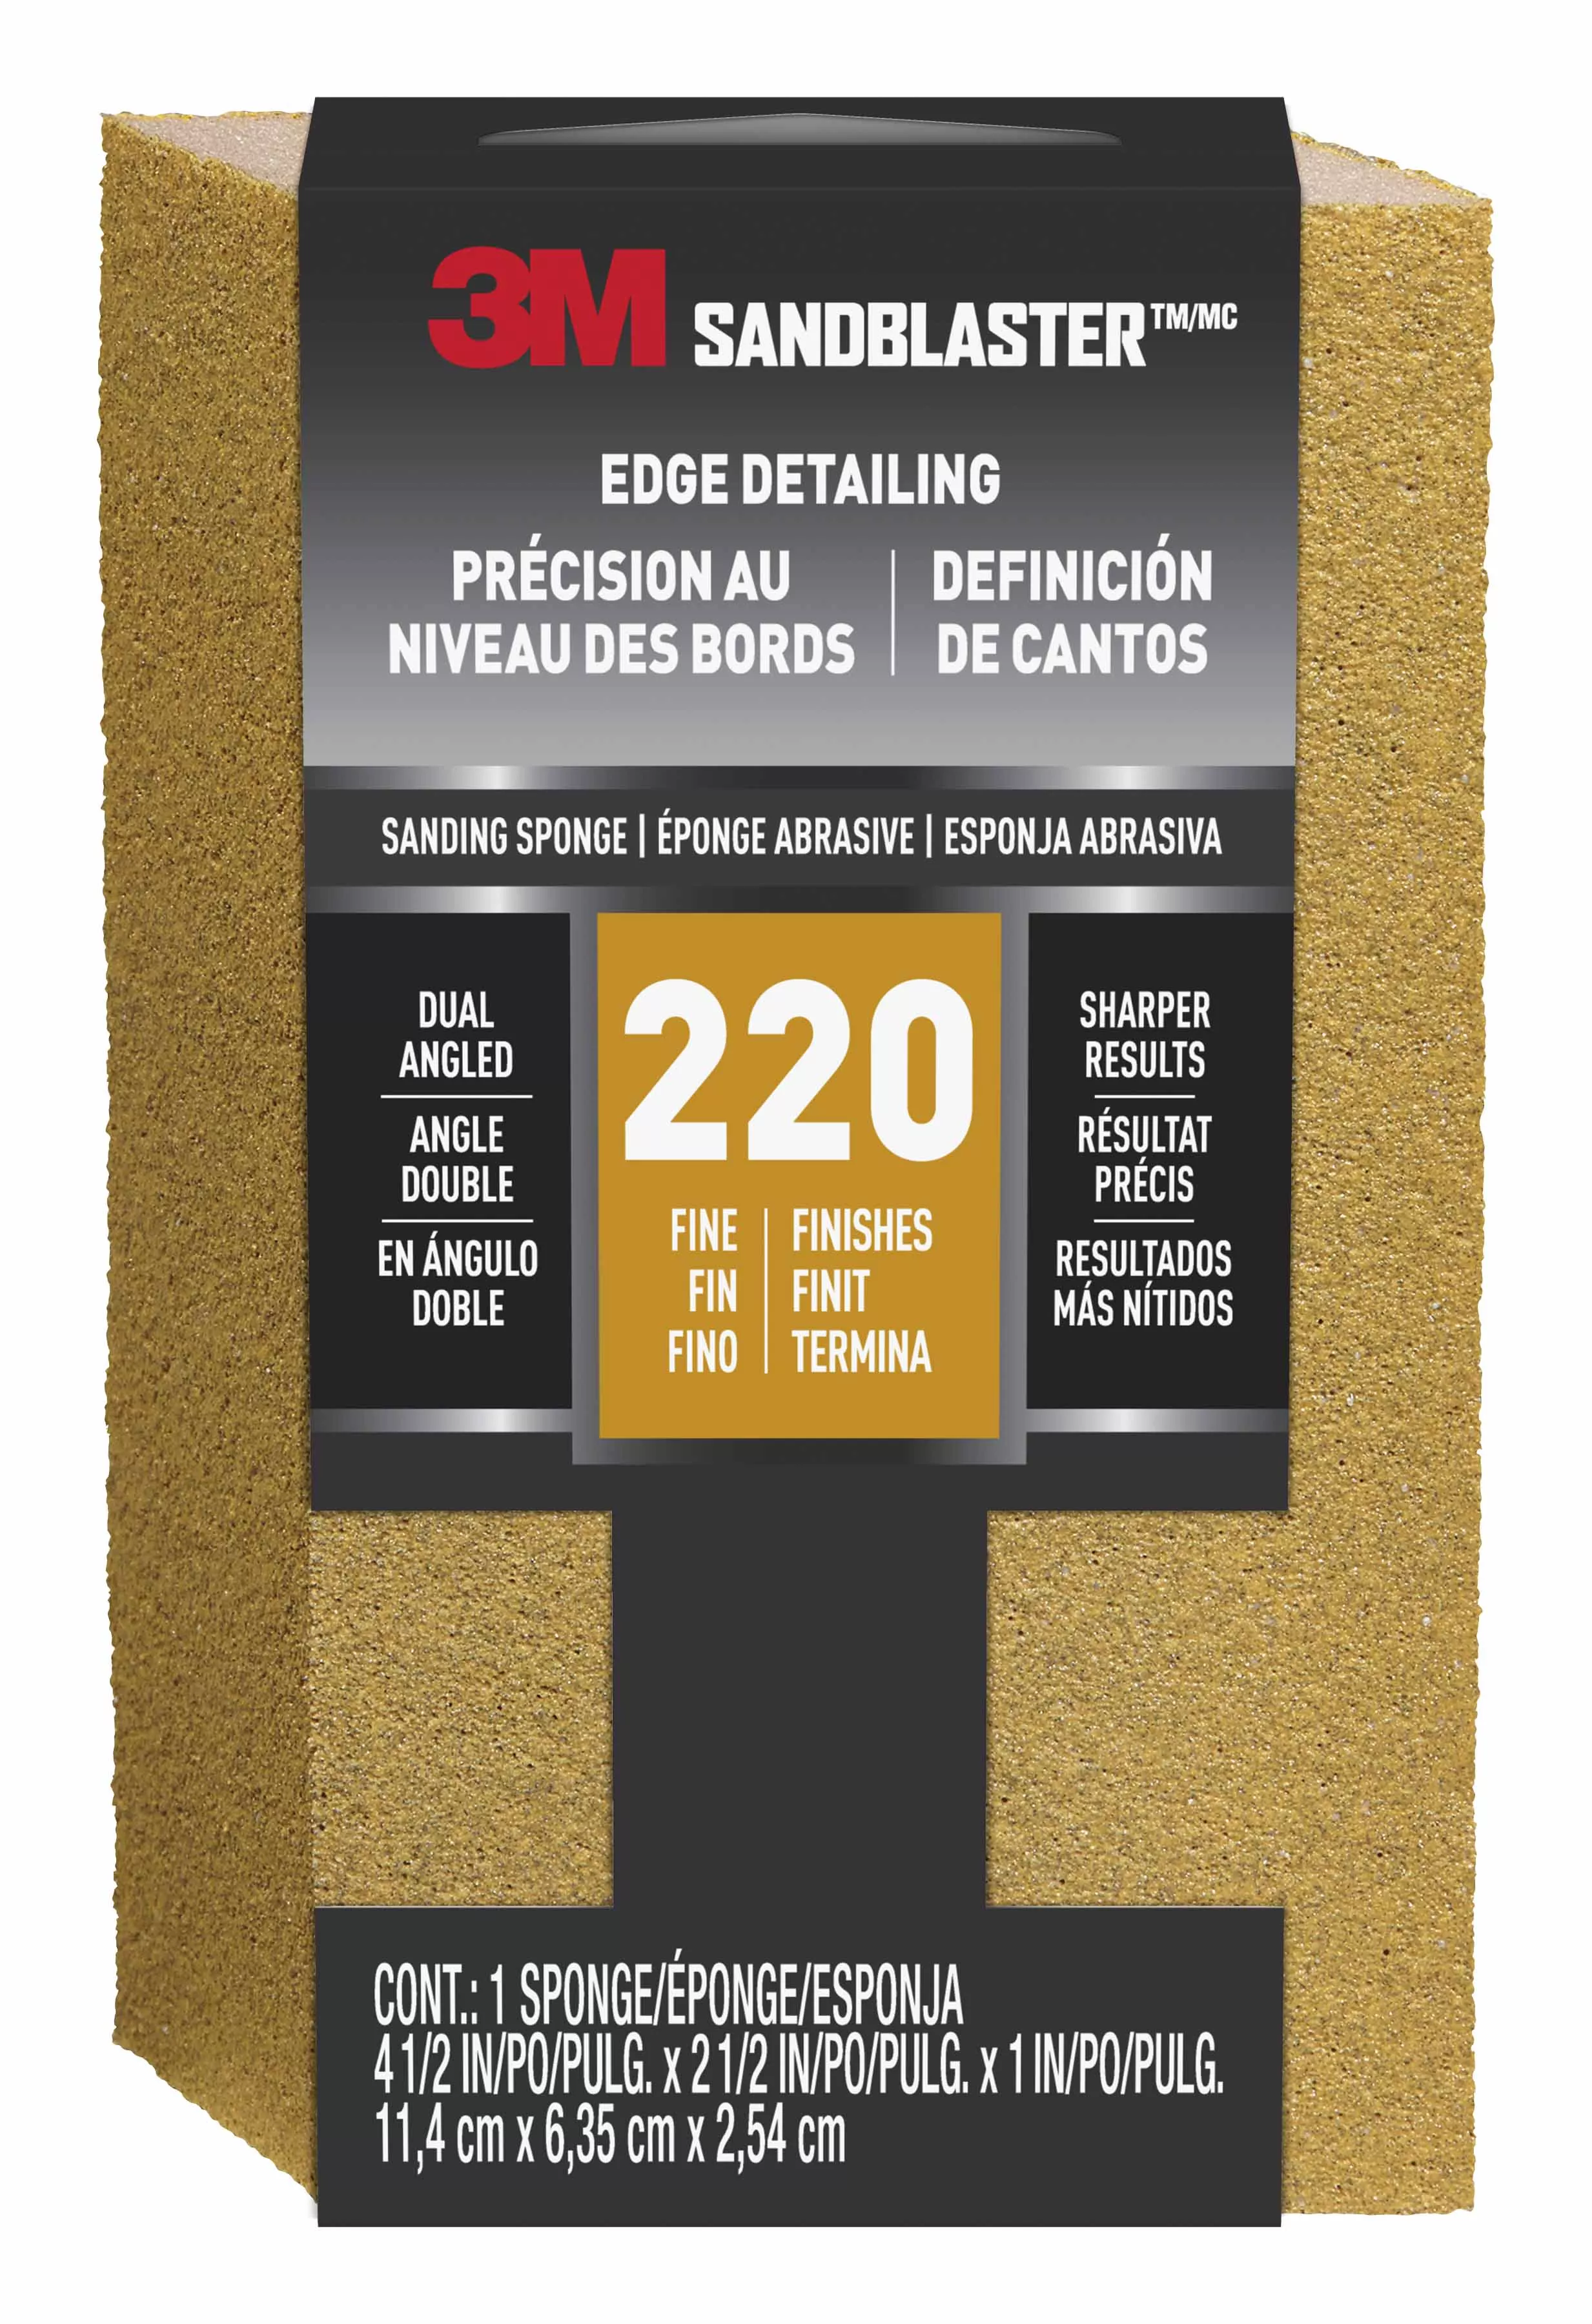 3M™ SandBlaster™ EDGE DETAILING Sanding Sponge, 9565 ,220 grit, 4 1/2 in
x 2 1/2 x 1 in, 1/pk